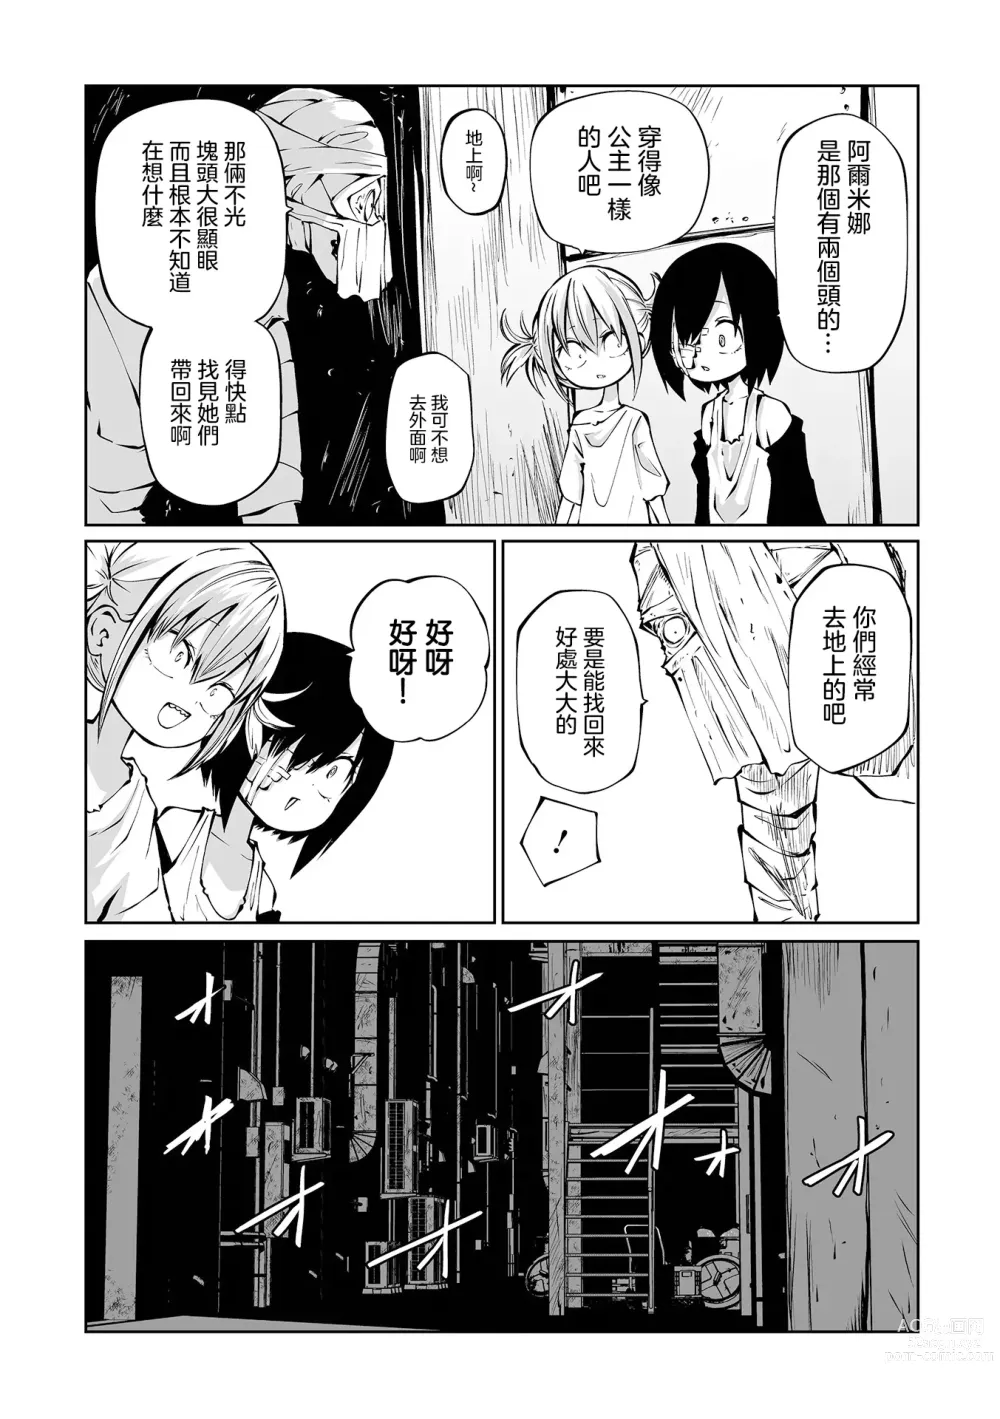 Page 45 of manga 地下生活